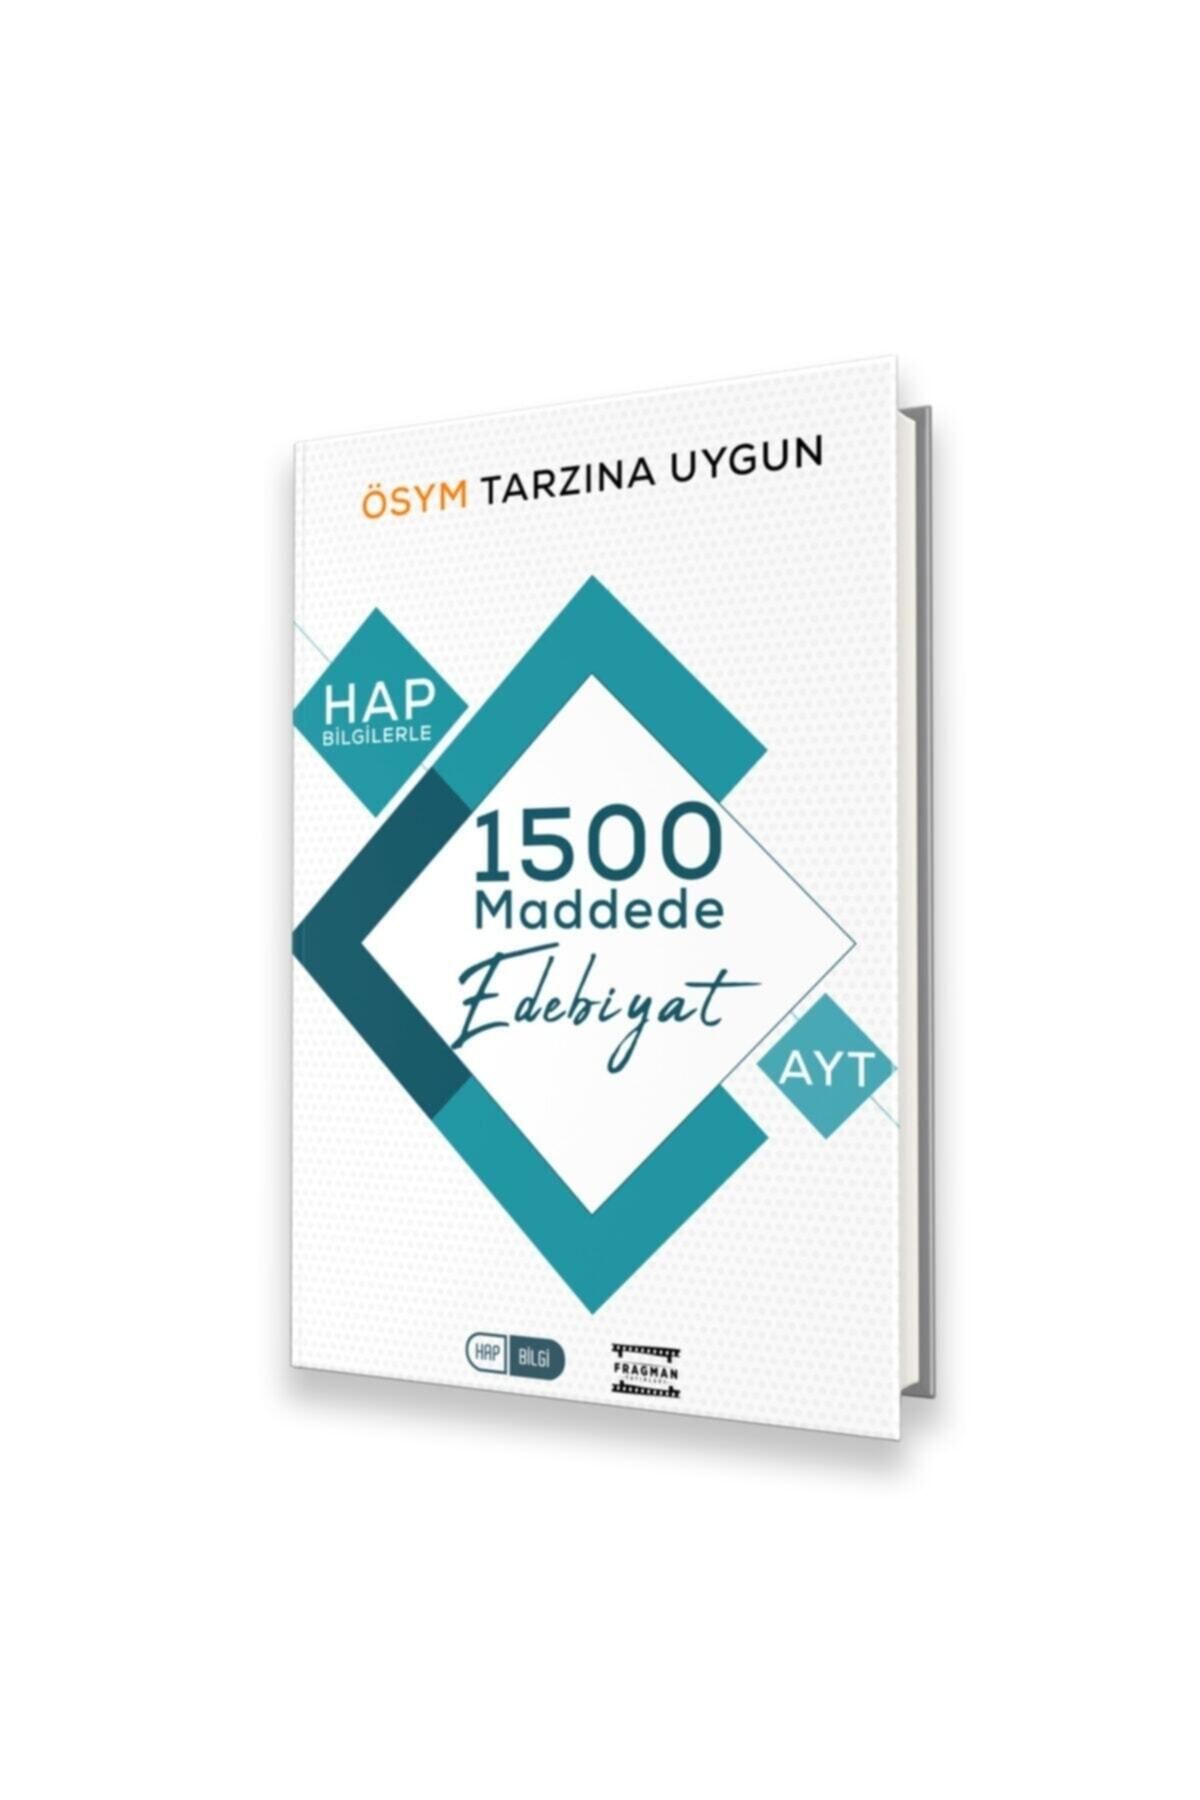 Fragman Yayınları 2023 Ayt Hap Bilgilerle 1500 Maddede Ayt Edebiyat Ösym Tarzına Uygun